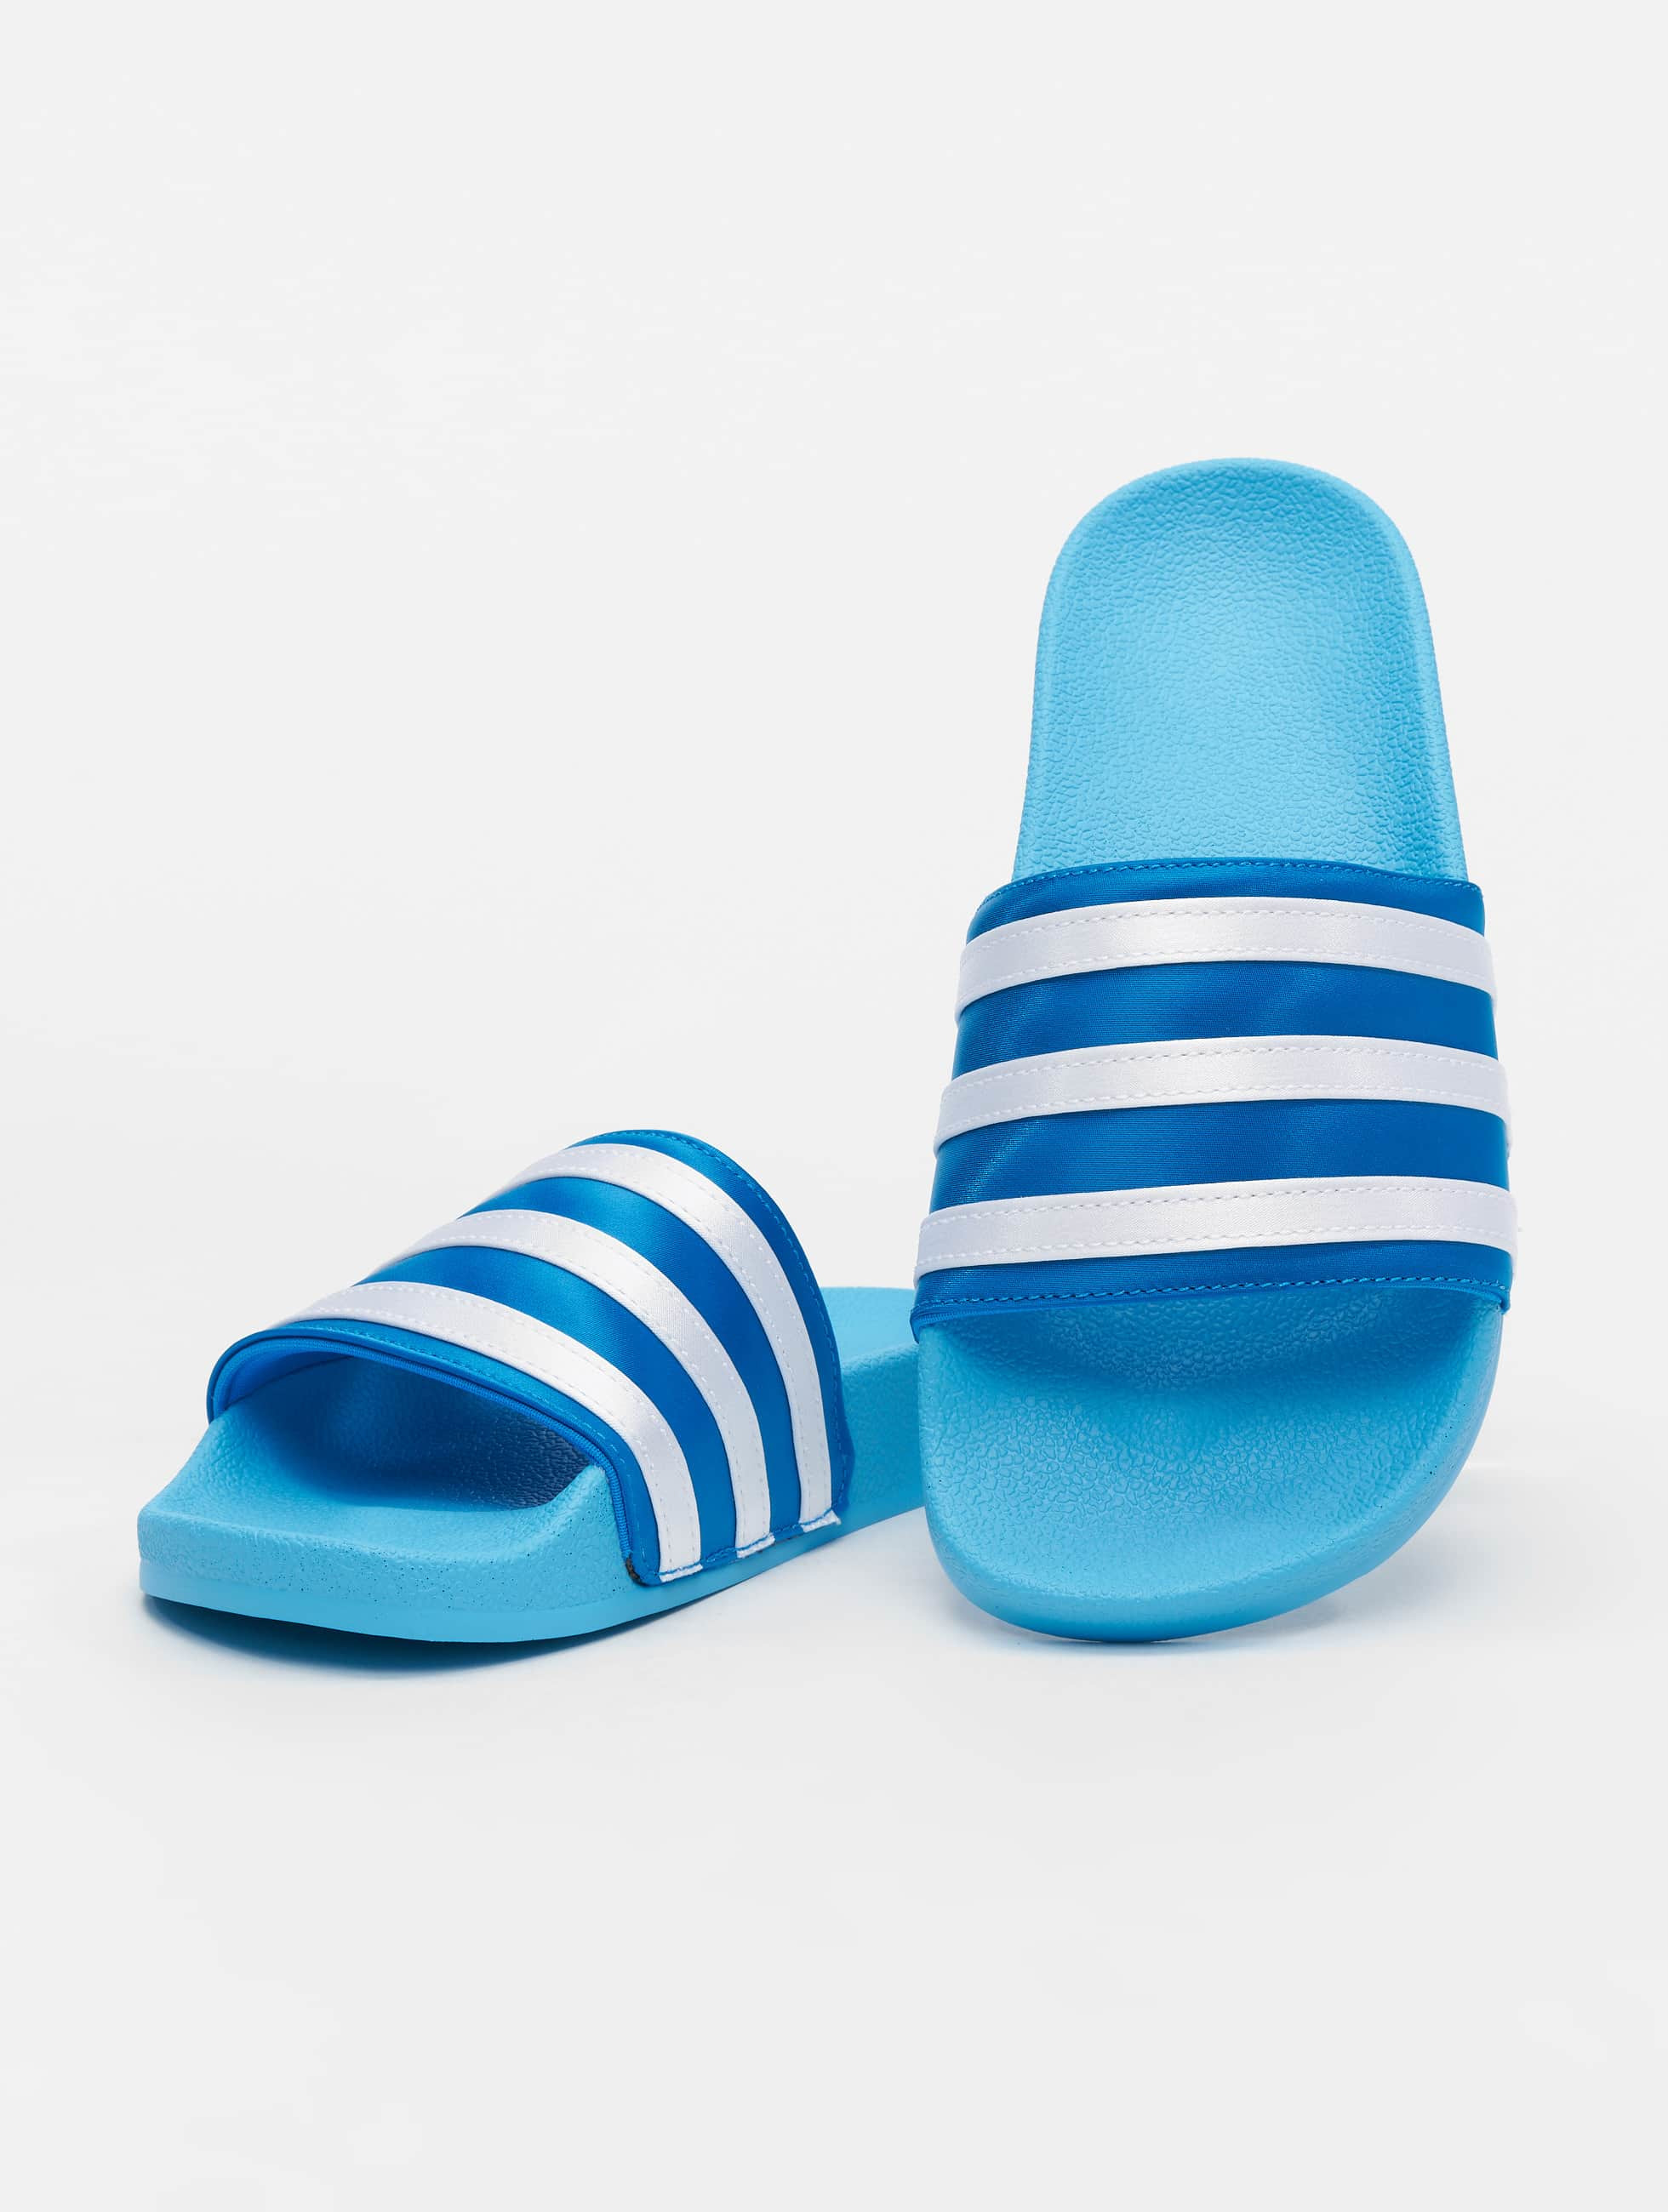 adidas Originals Shoe / Sandals Adilette in blue 872926